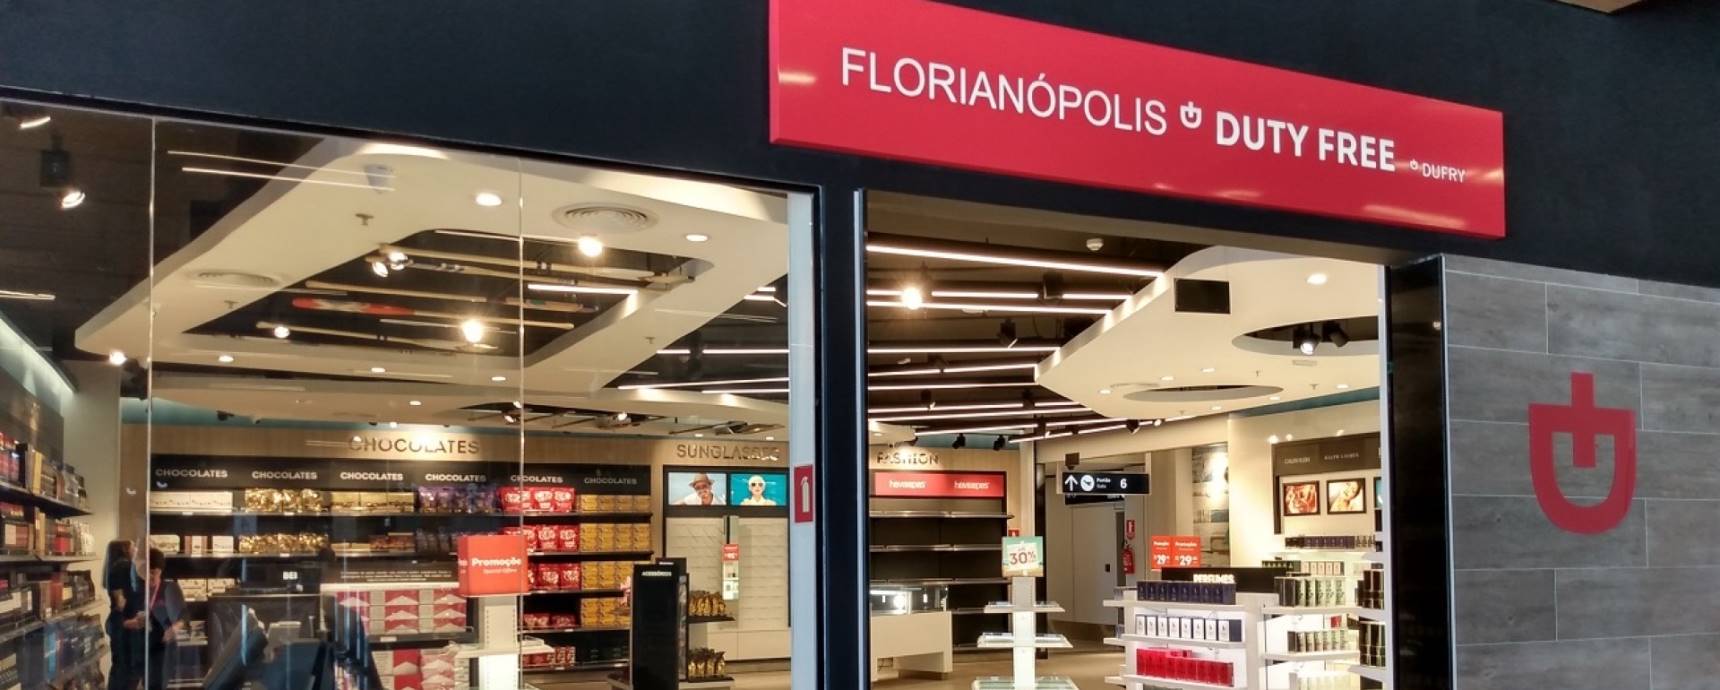 Am internationalen Flughafen Florianópolis werden zwei Duty-Free-Einheiten eröffnet